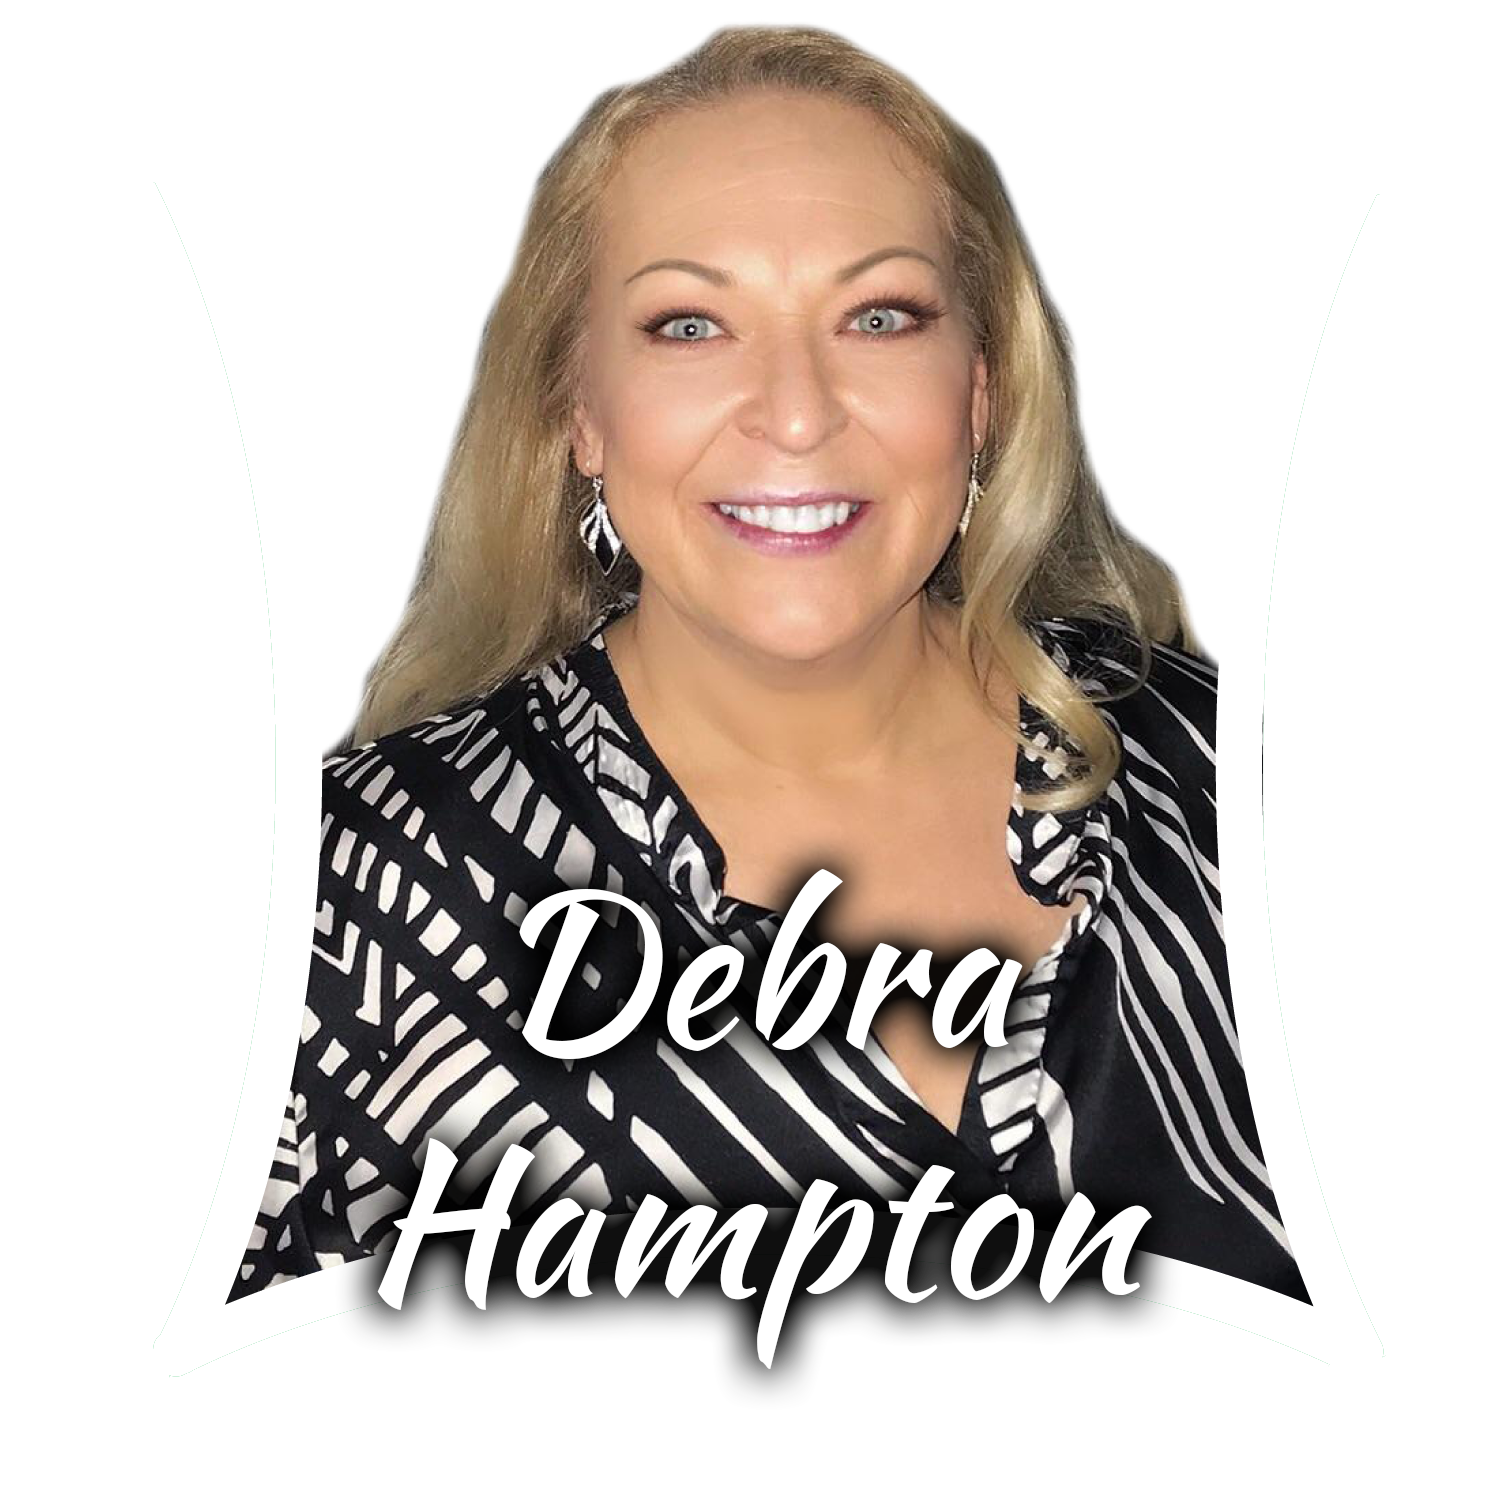 Debra_Hampton-01